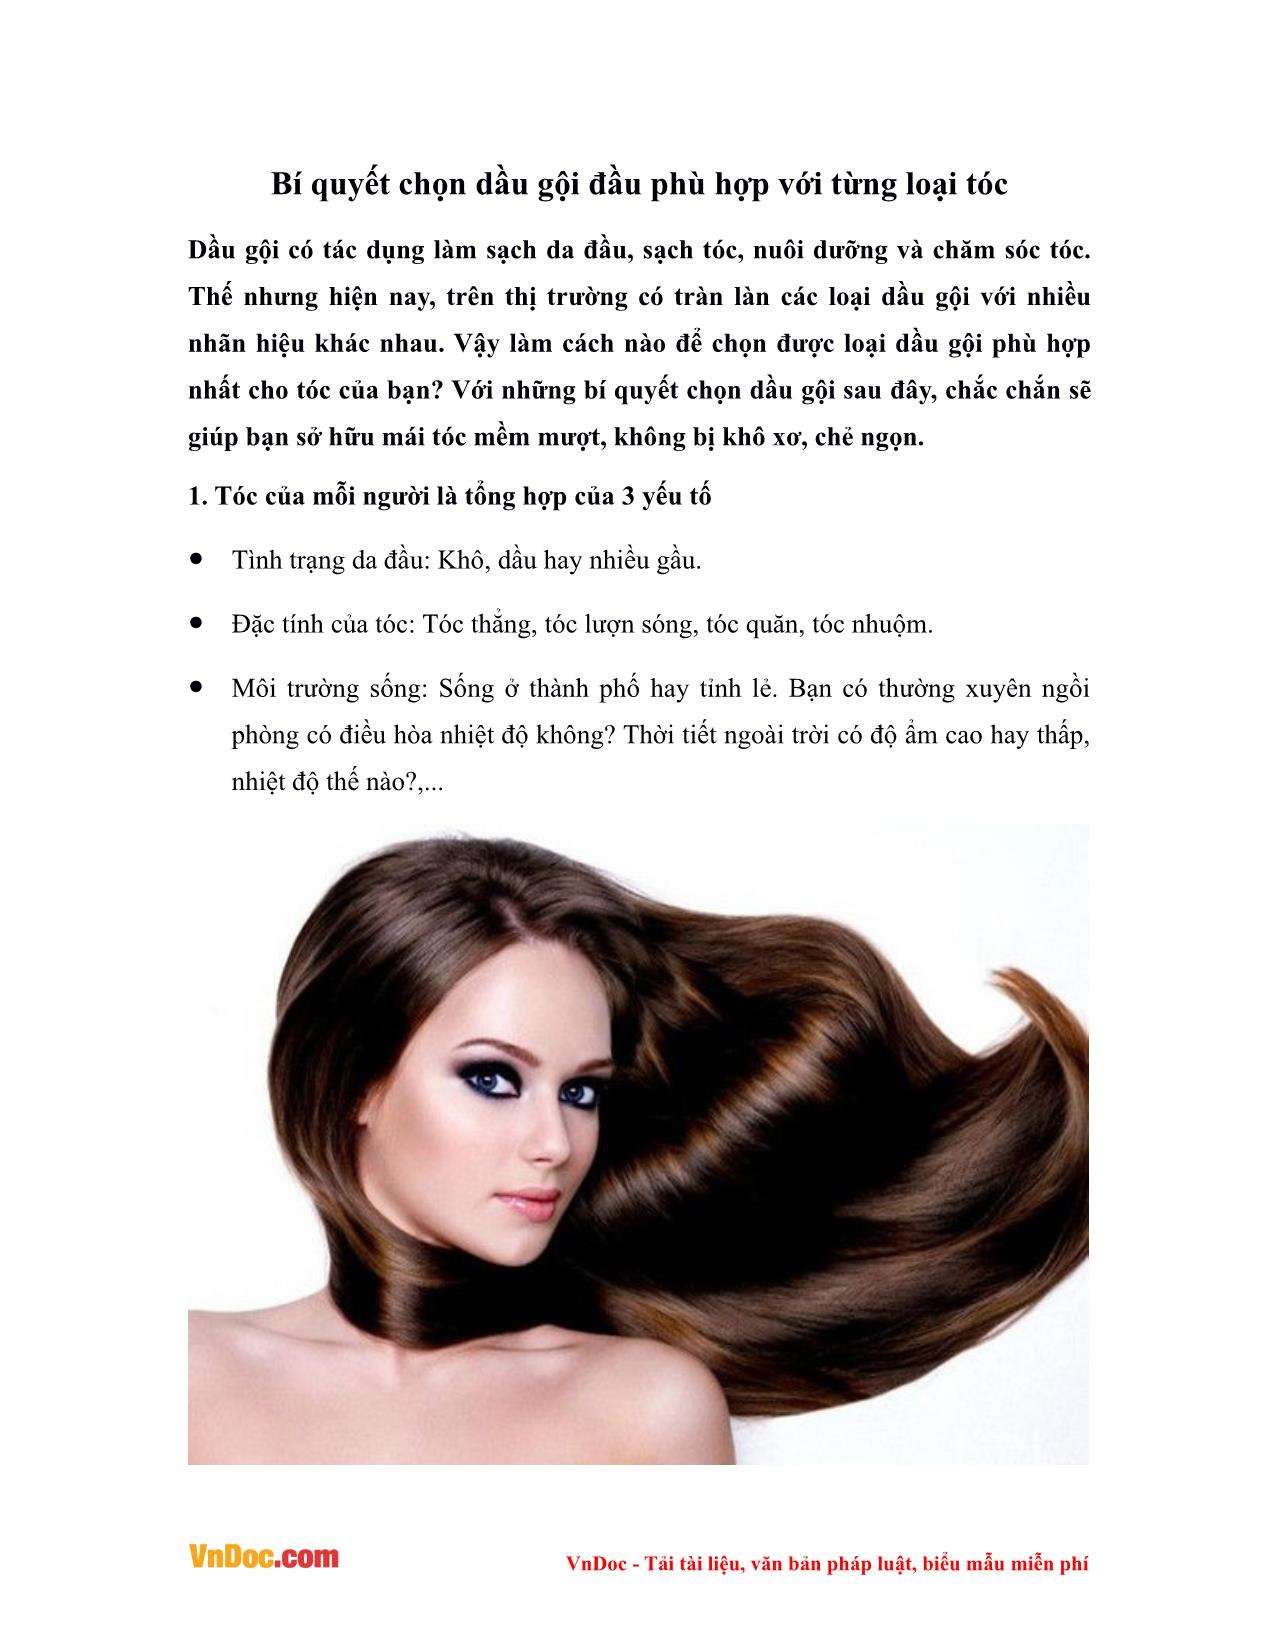 Bí quyết chọn dầu gội đầu phù hợp với từng loại tóc trang 1